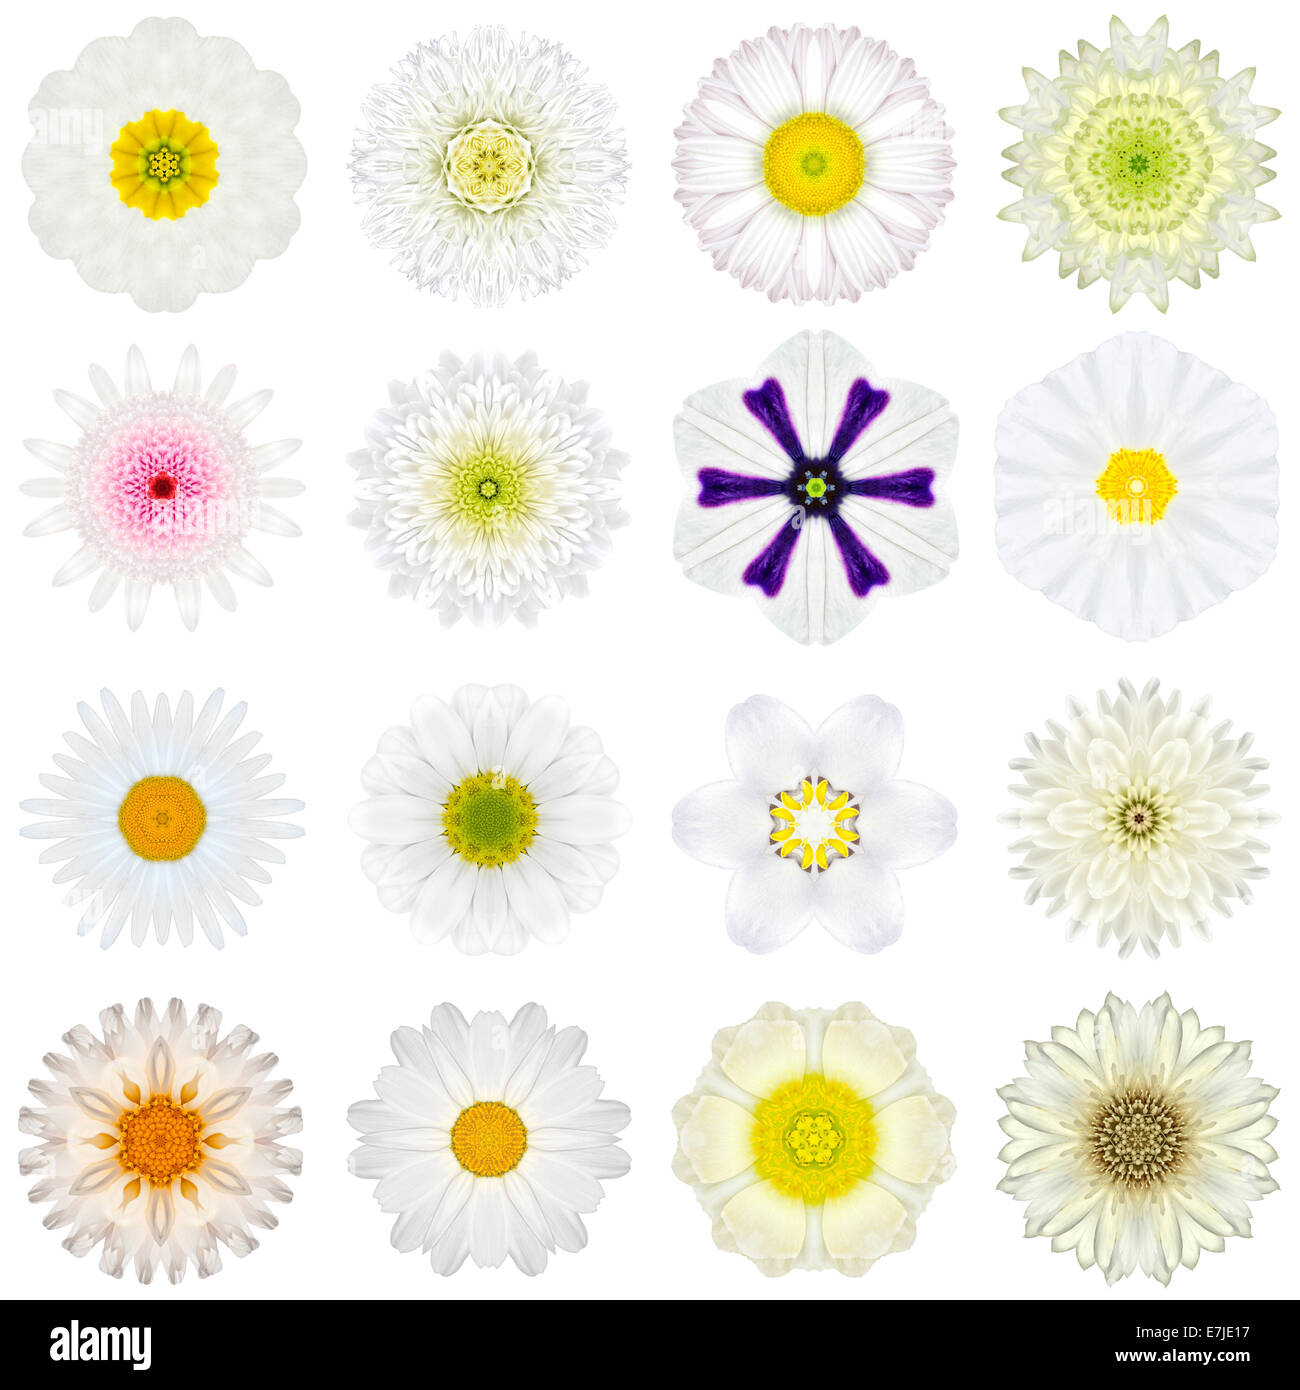 Große Sammlung von verschiedenen weißen konzentrische Muster Blumen. Kaleidoskopische Mandala-Muster, Isolated on White Background. Konzent Stockfoto